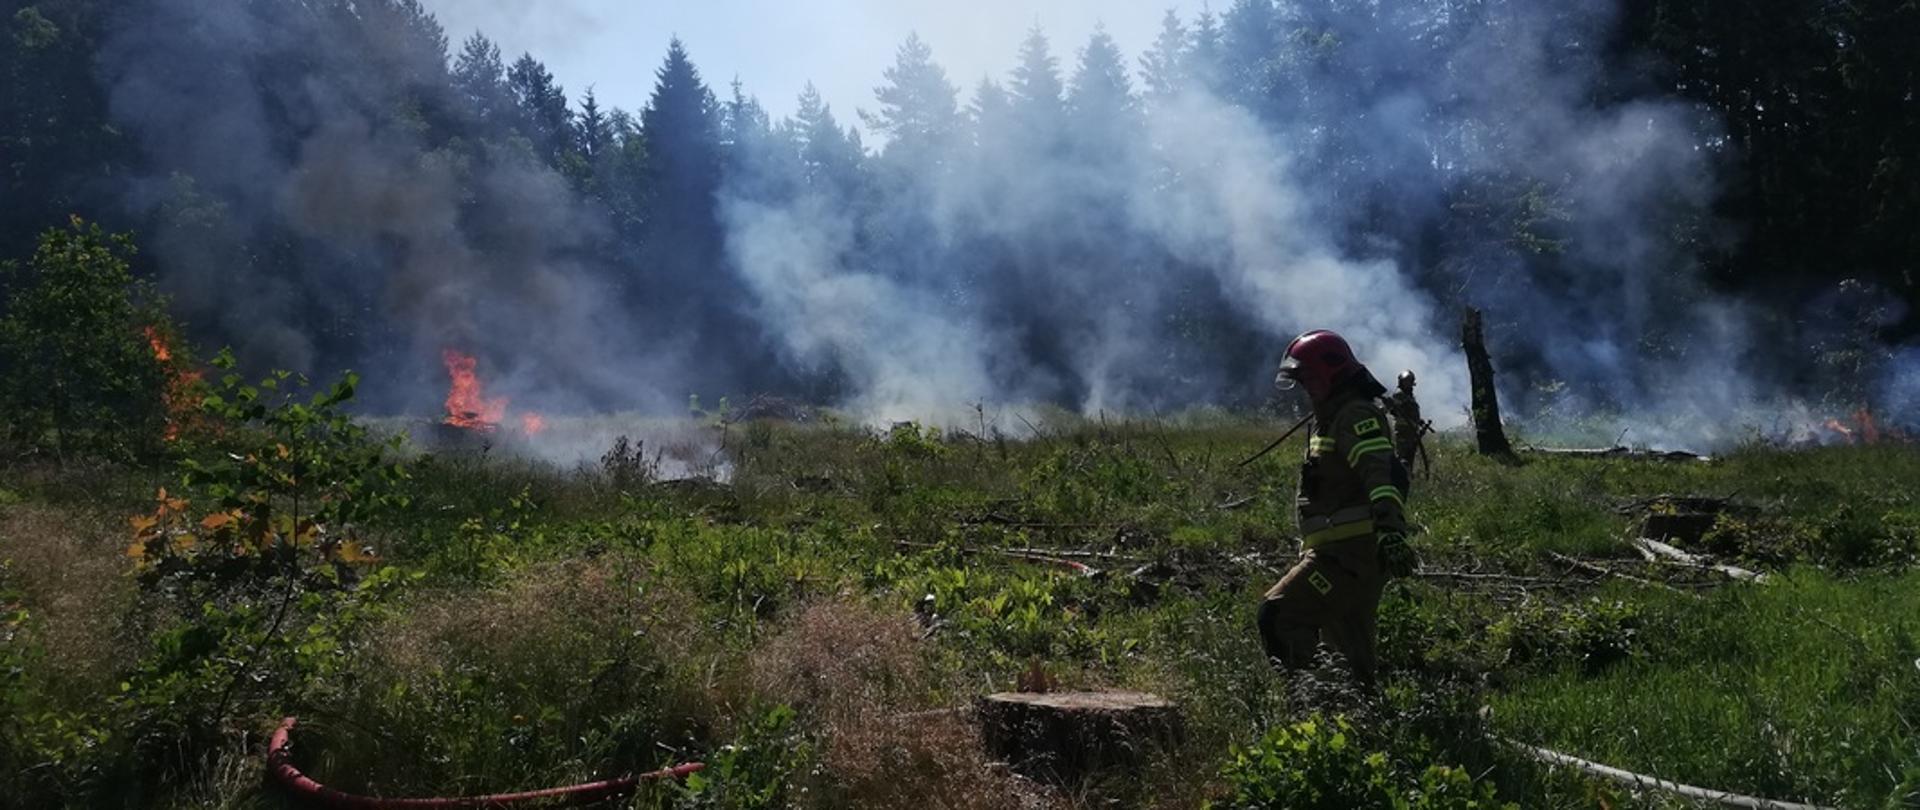 Dym i ognień na otwartej przestrzeni przy lesie. Strażak rozmija węże strażackie.